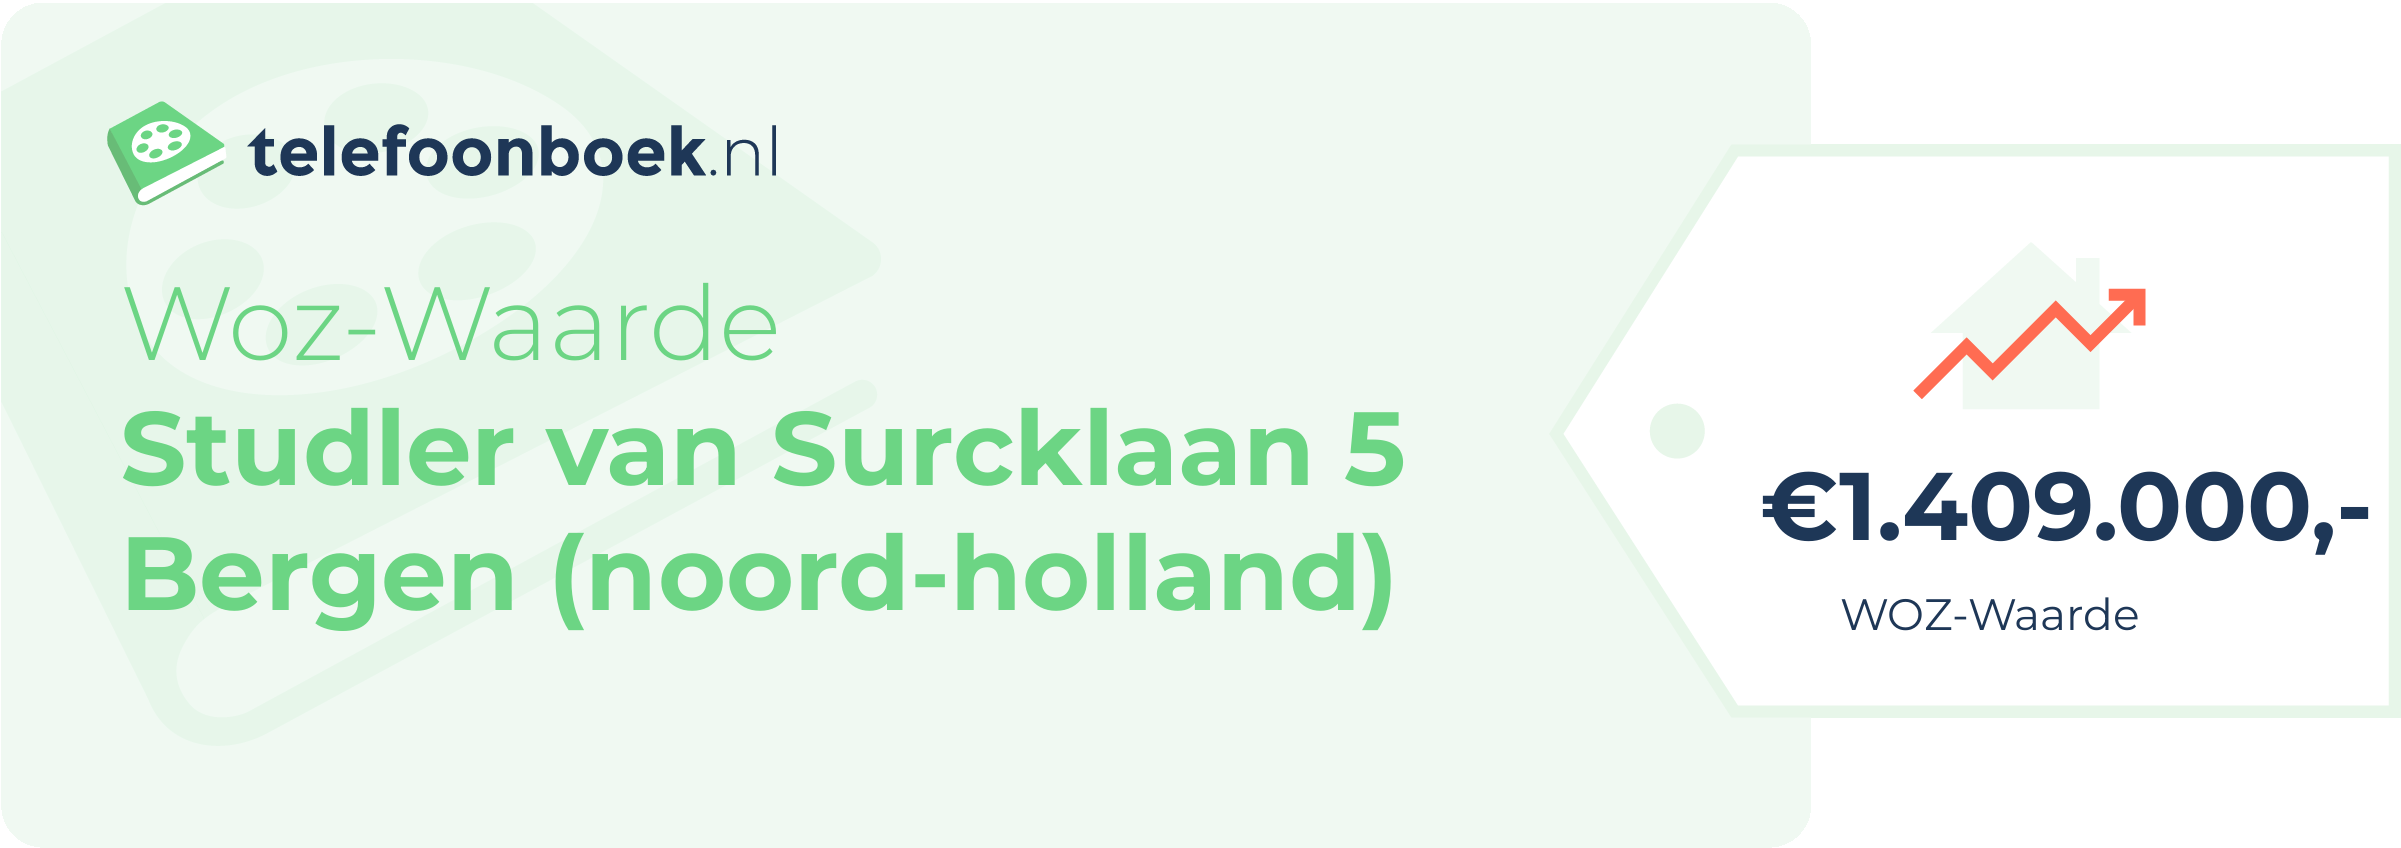 WOZ-waarde Studler Van Surcklaan 5 Bergen (Noord-Holland)